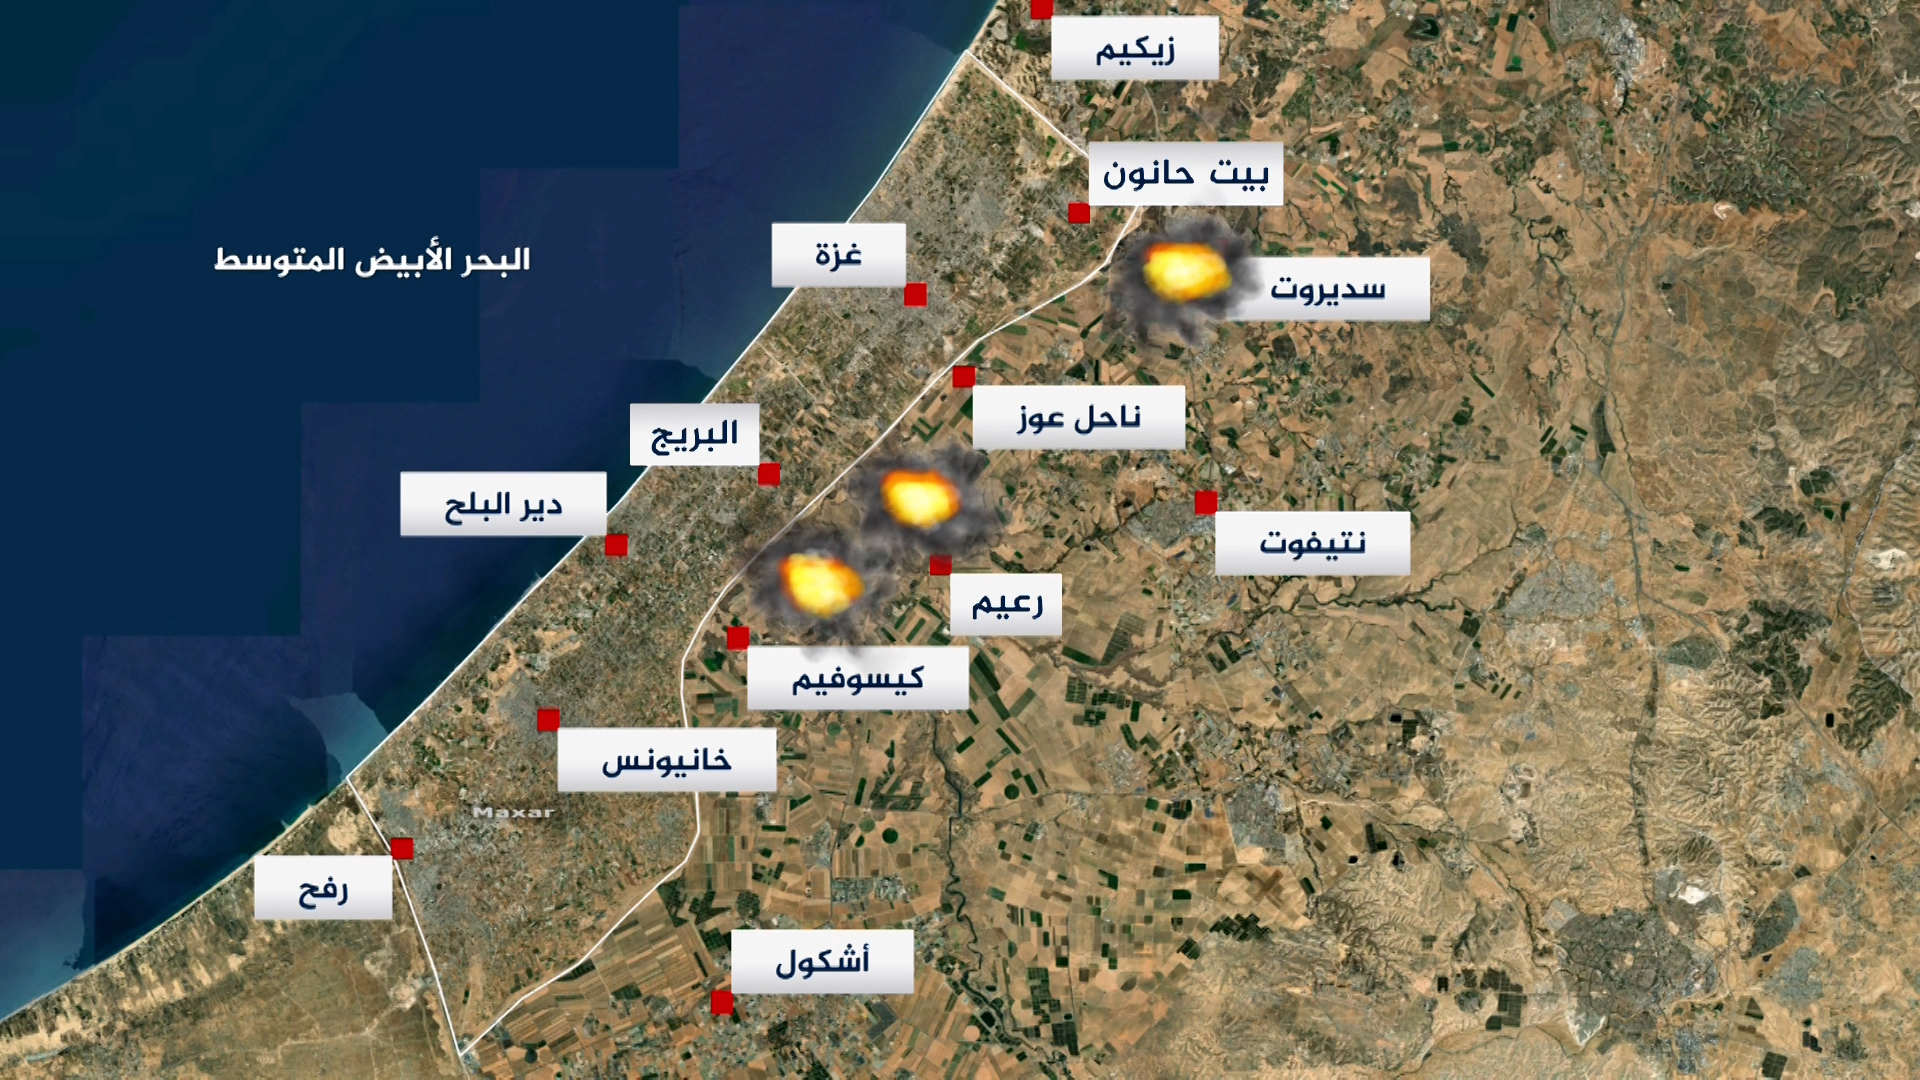 خطة إسرائيلية من 3 مستويات تشمل منطقة عازلة بغزة بعد الحرب | أخبار – البوكس نيوز